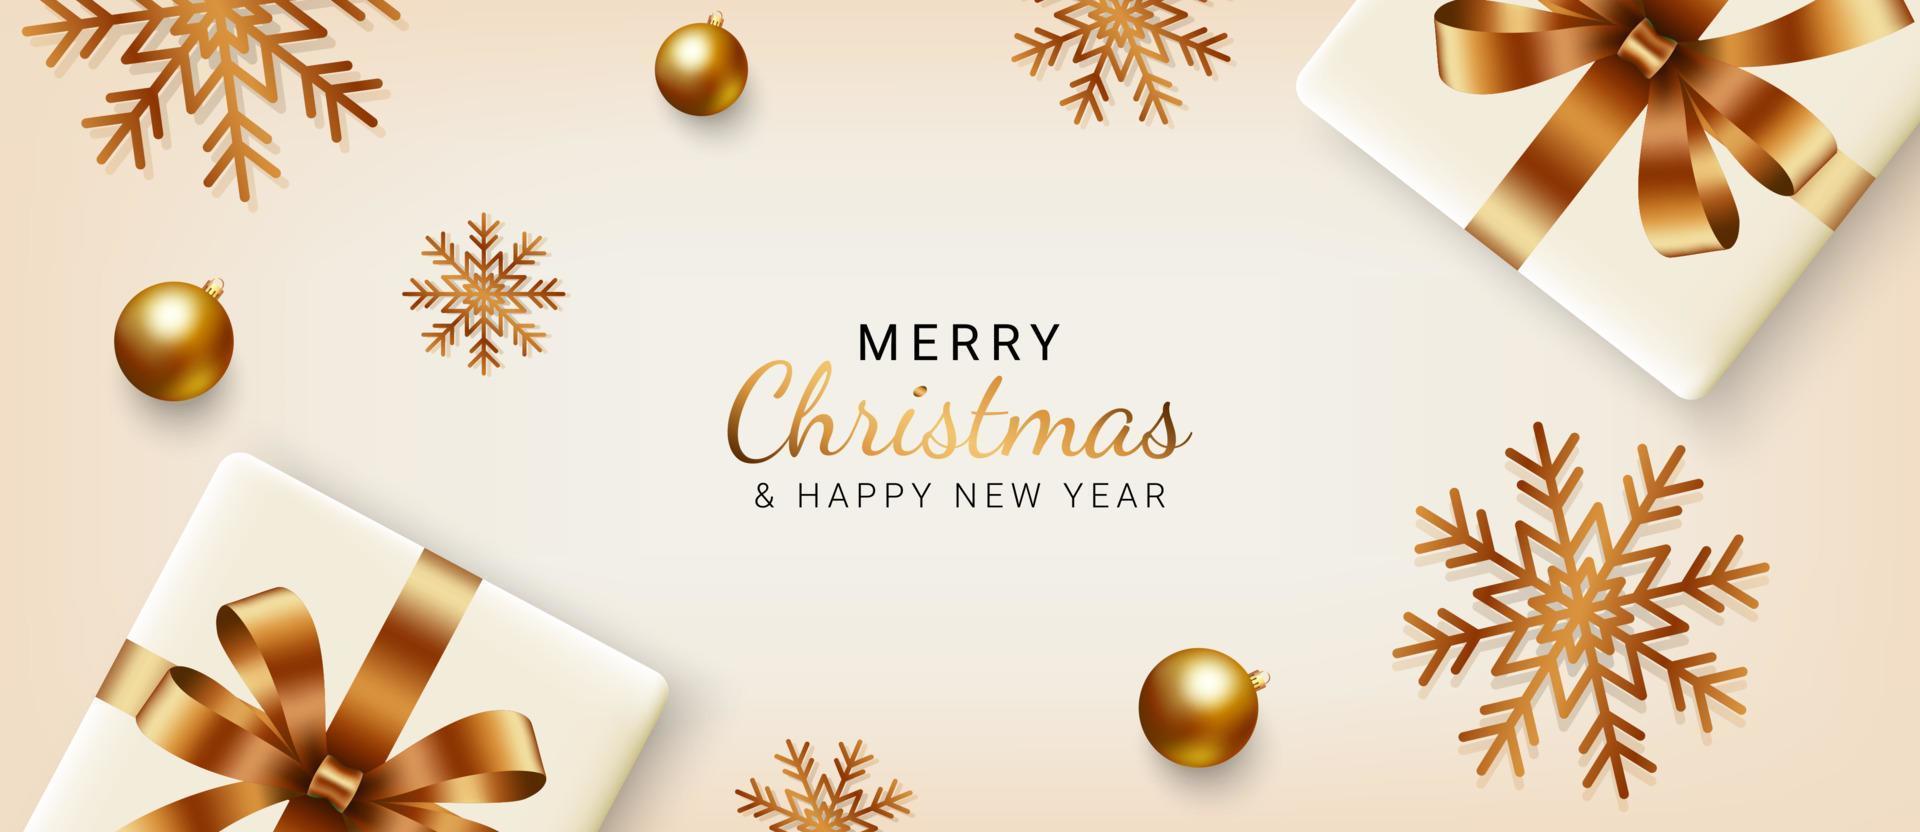 Kerstmis spandoek. Kerstmis achtergrond ontwerp met geschenk dozen, sneeuwvlokken en gouden ballen. Kerstmis groet kaarten, uitnodigingen, koppen. vector illustratie